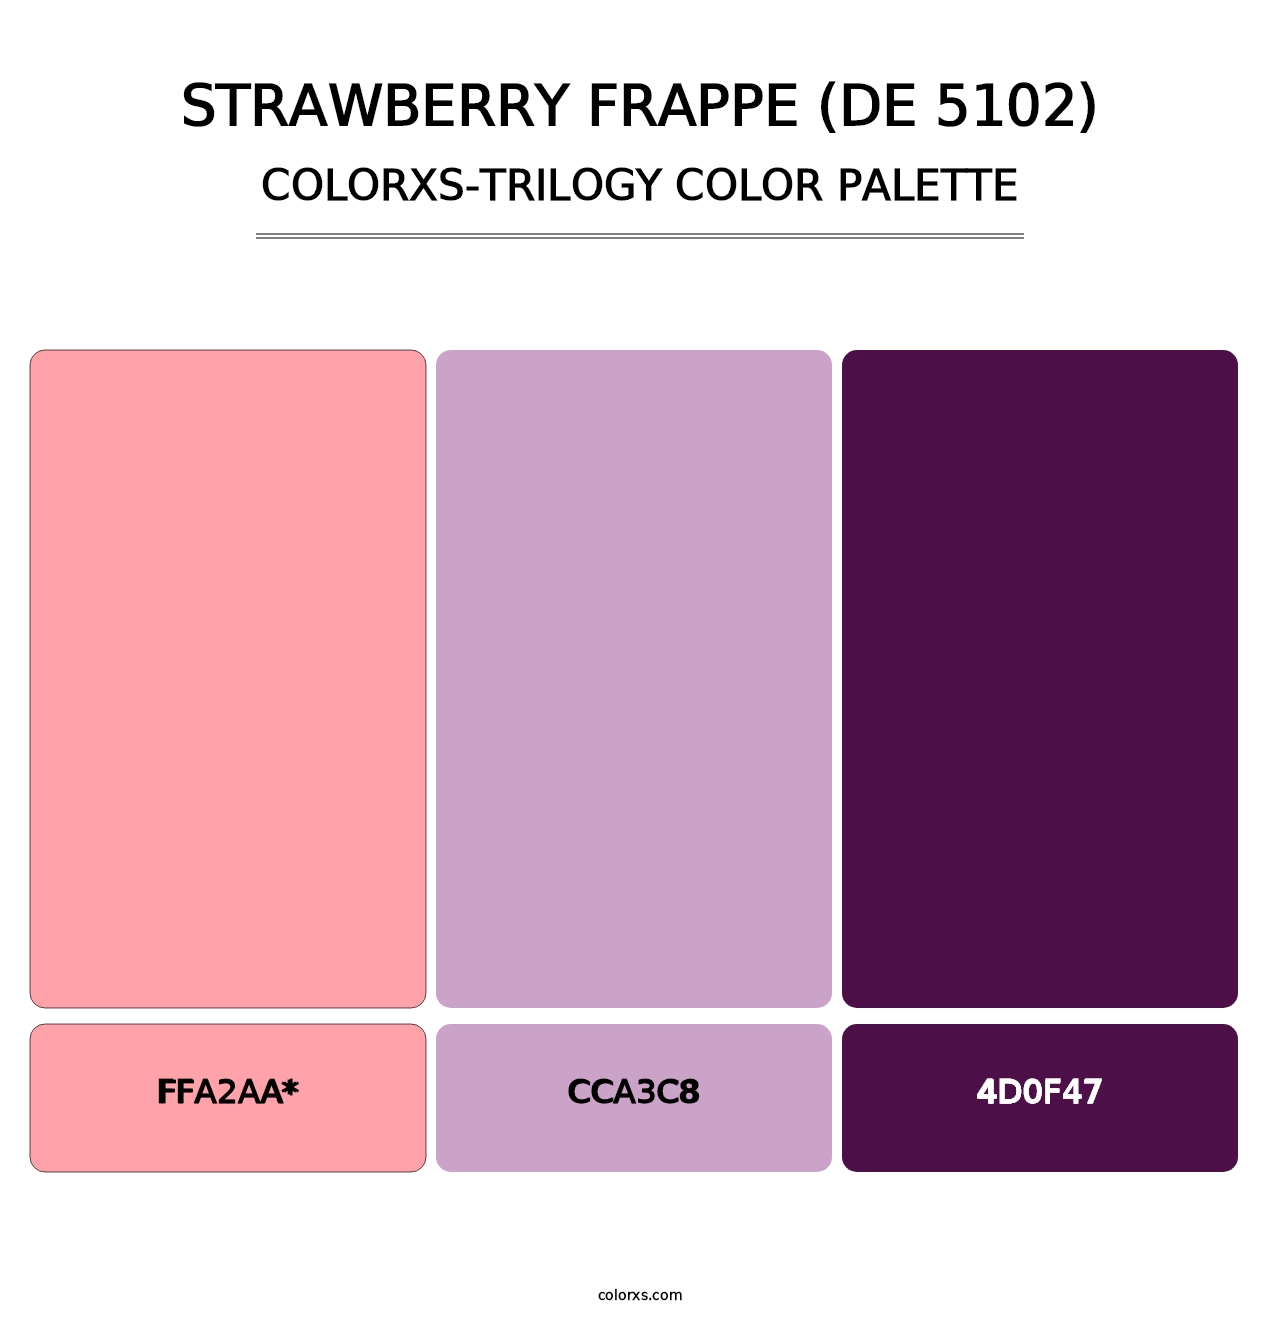 Strawberry Frappe (DE 5102) - Colorxs Trilogy Palette